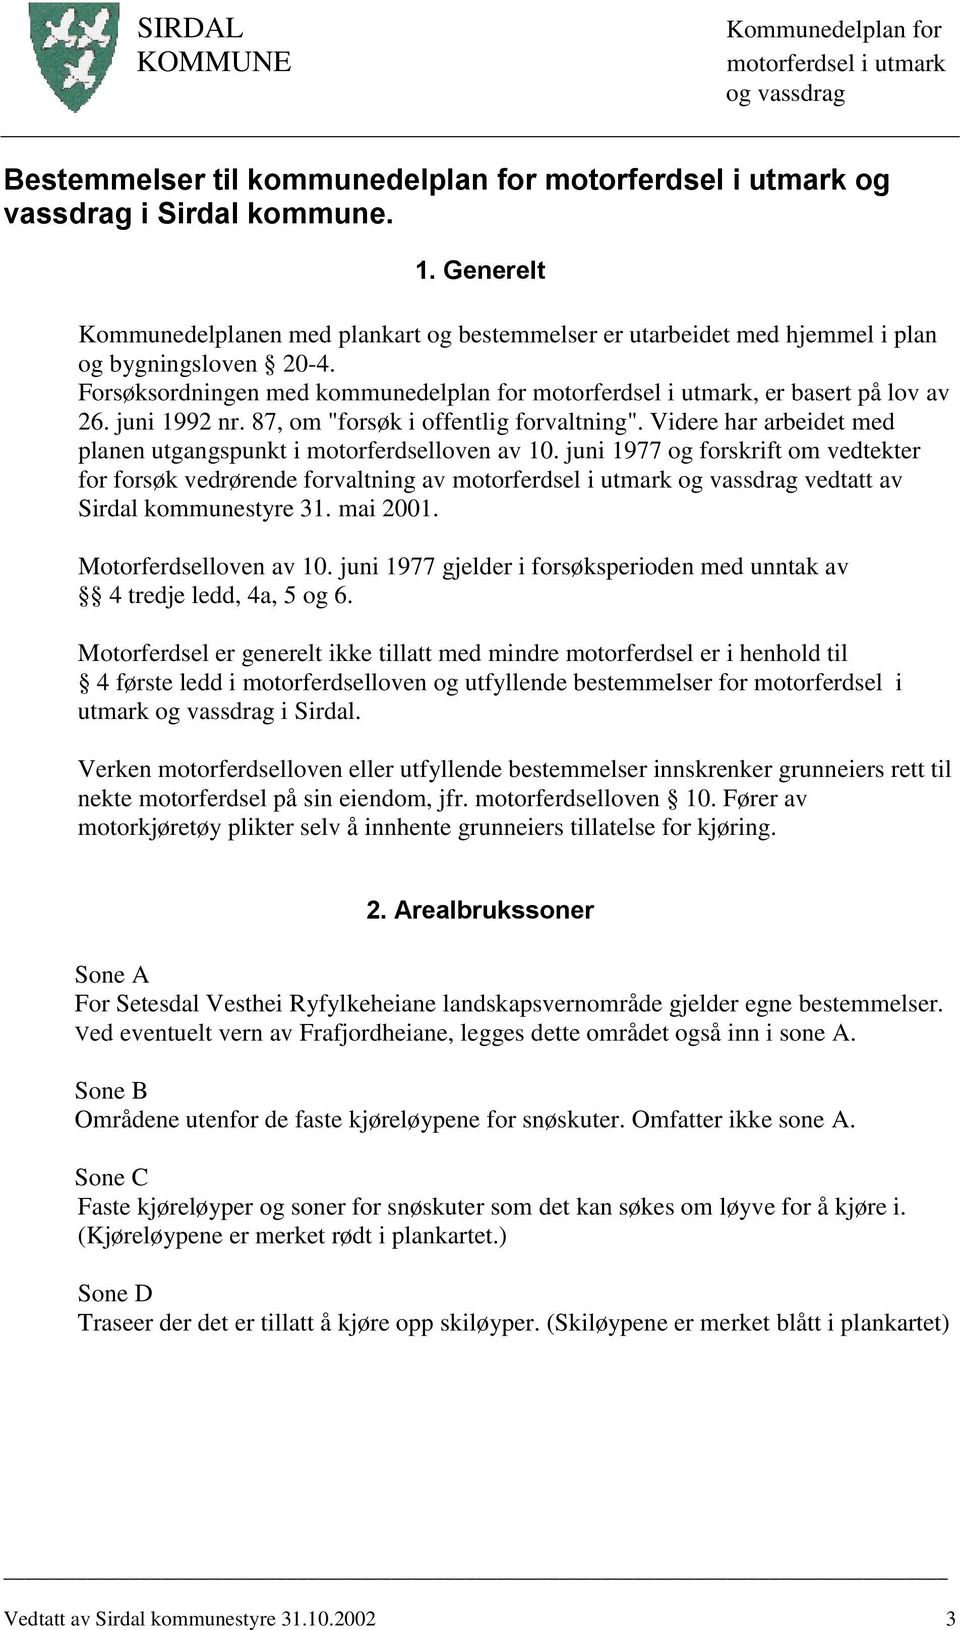 juni 1977 og forskrift om vedtekter for forsøk vedrørende forvaltning av vedtatt av Sirdal kommunestyre 31. mai 2001. Motorferdselloven av 10.